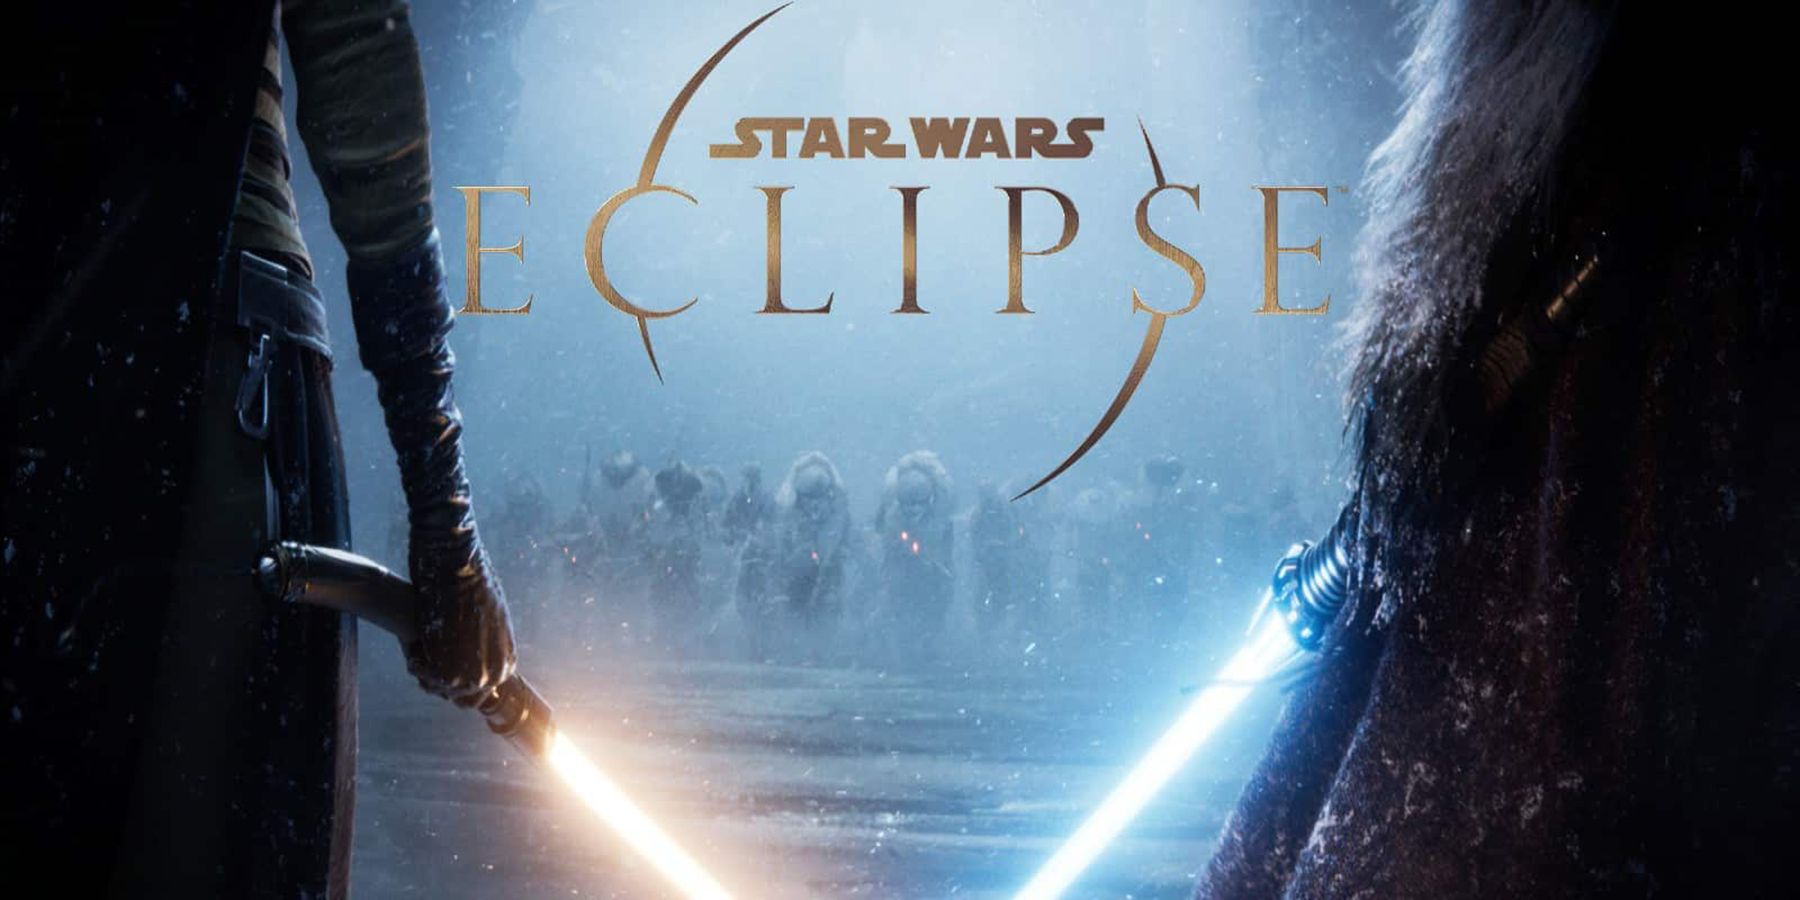 Se han conocido problemas con Star Wars Eclipse. Se desconoce en este momento qué hará después de dejar el cargo.